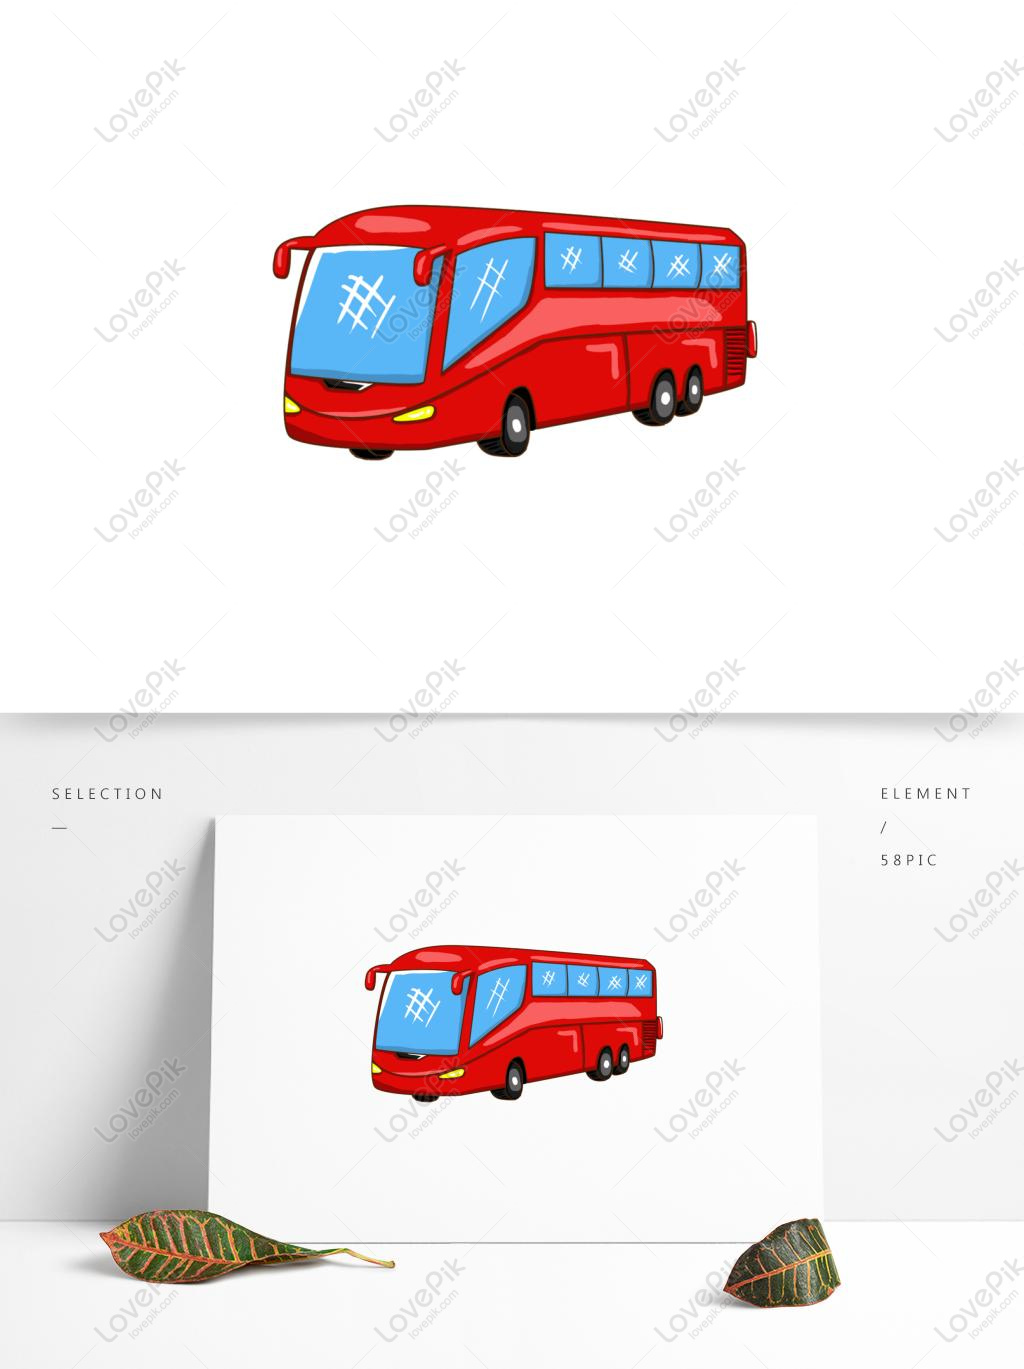 Xe buýt đỏ luôn là biểu tượng của sự thăng hoa và phát triển của một thành phố. Hãy xem bức ảnh của chúng tôi về một chiếc xe buýt đỏ trên đường phố, bạn sẽ cảm nhận được sự sống động và năng động của thành phố.